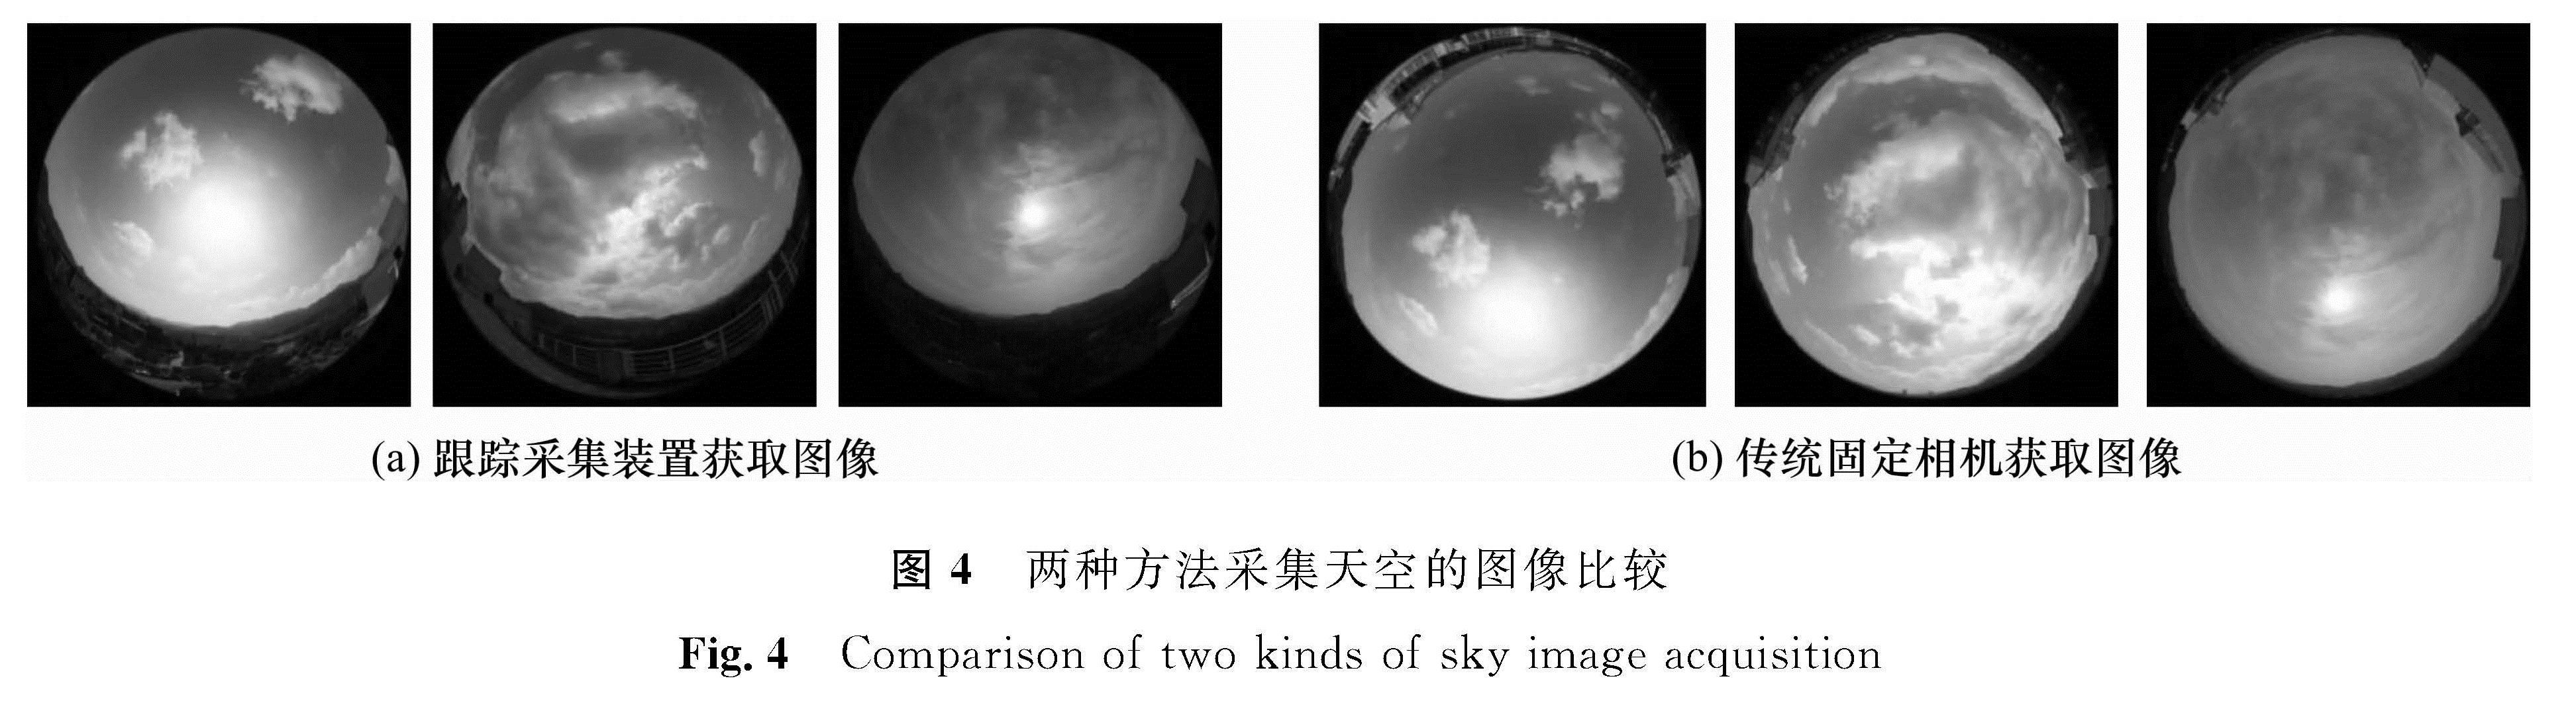 图4 两种方法采集天空的图像比较<br/>Fig.4 Comparison of two kinds of sky image acquisition